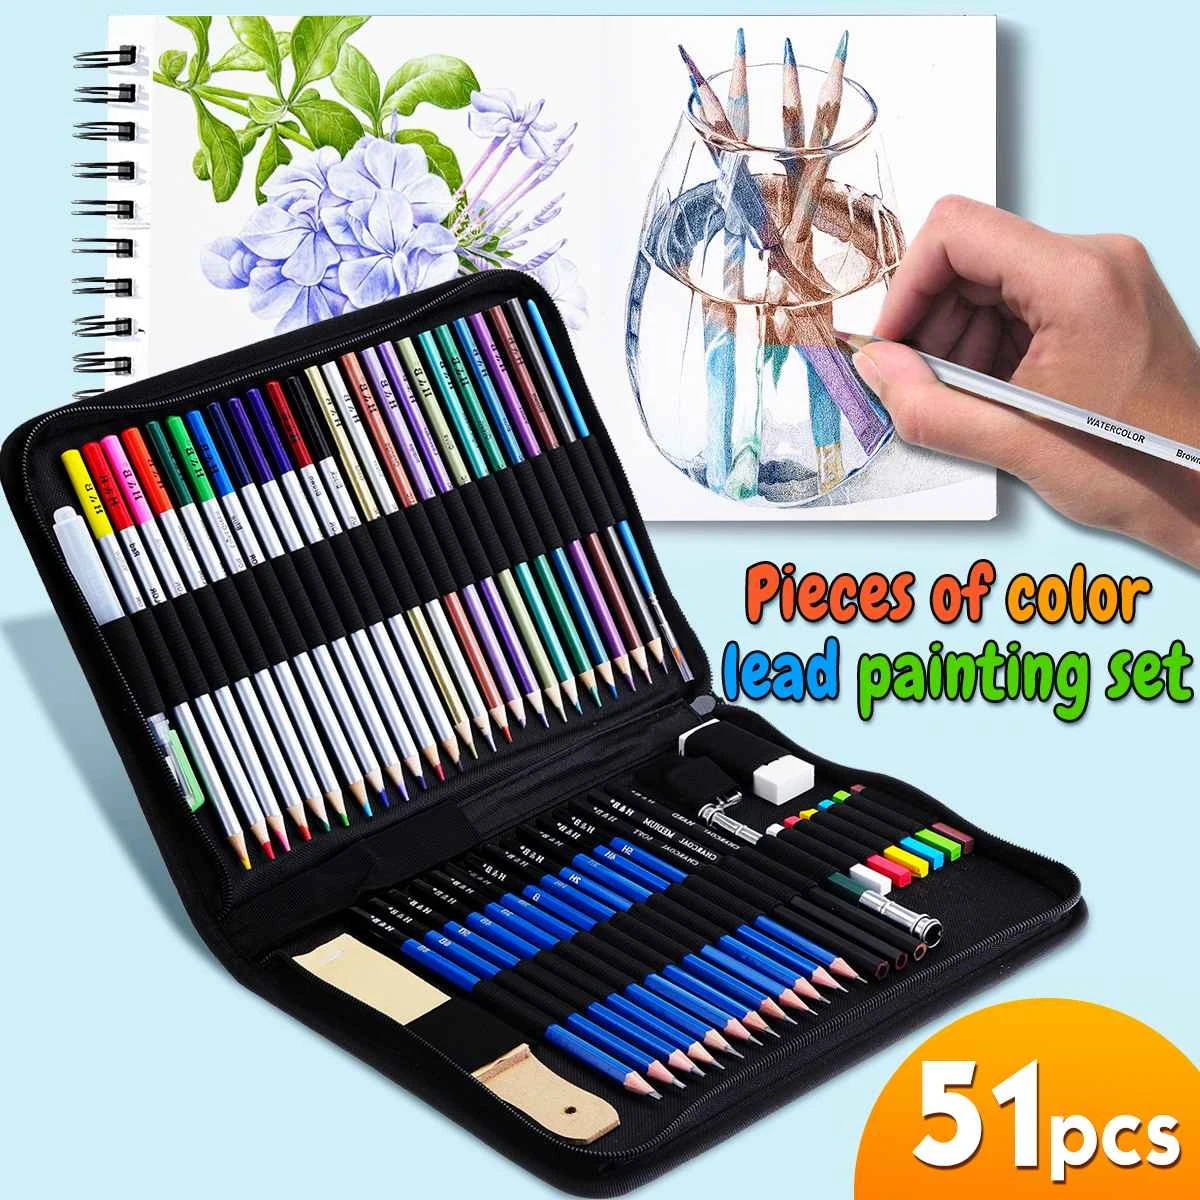 Boum du 2 Septembre. - Page 2 Kit-d-artiste-professionnel-pour-dessin-51-pi-ces-crayons-de-couleur-Kit-de-croquis-outils.jpeg_Q90.jpeg_